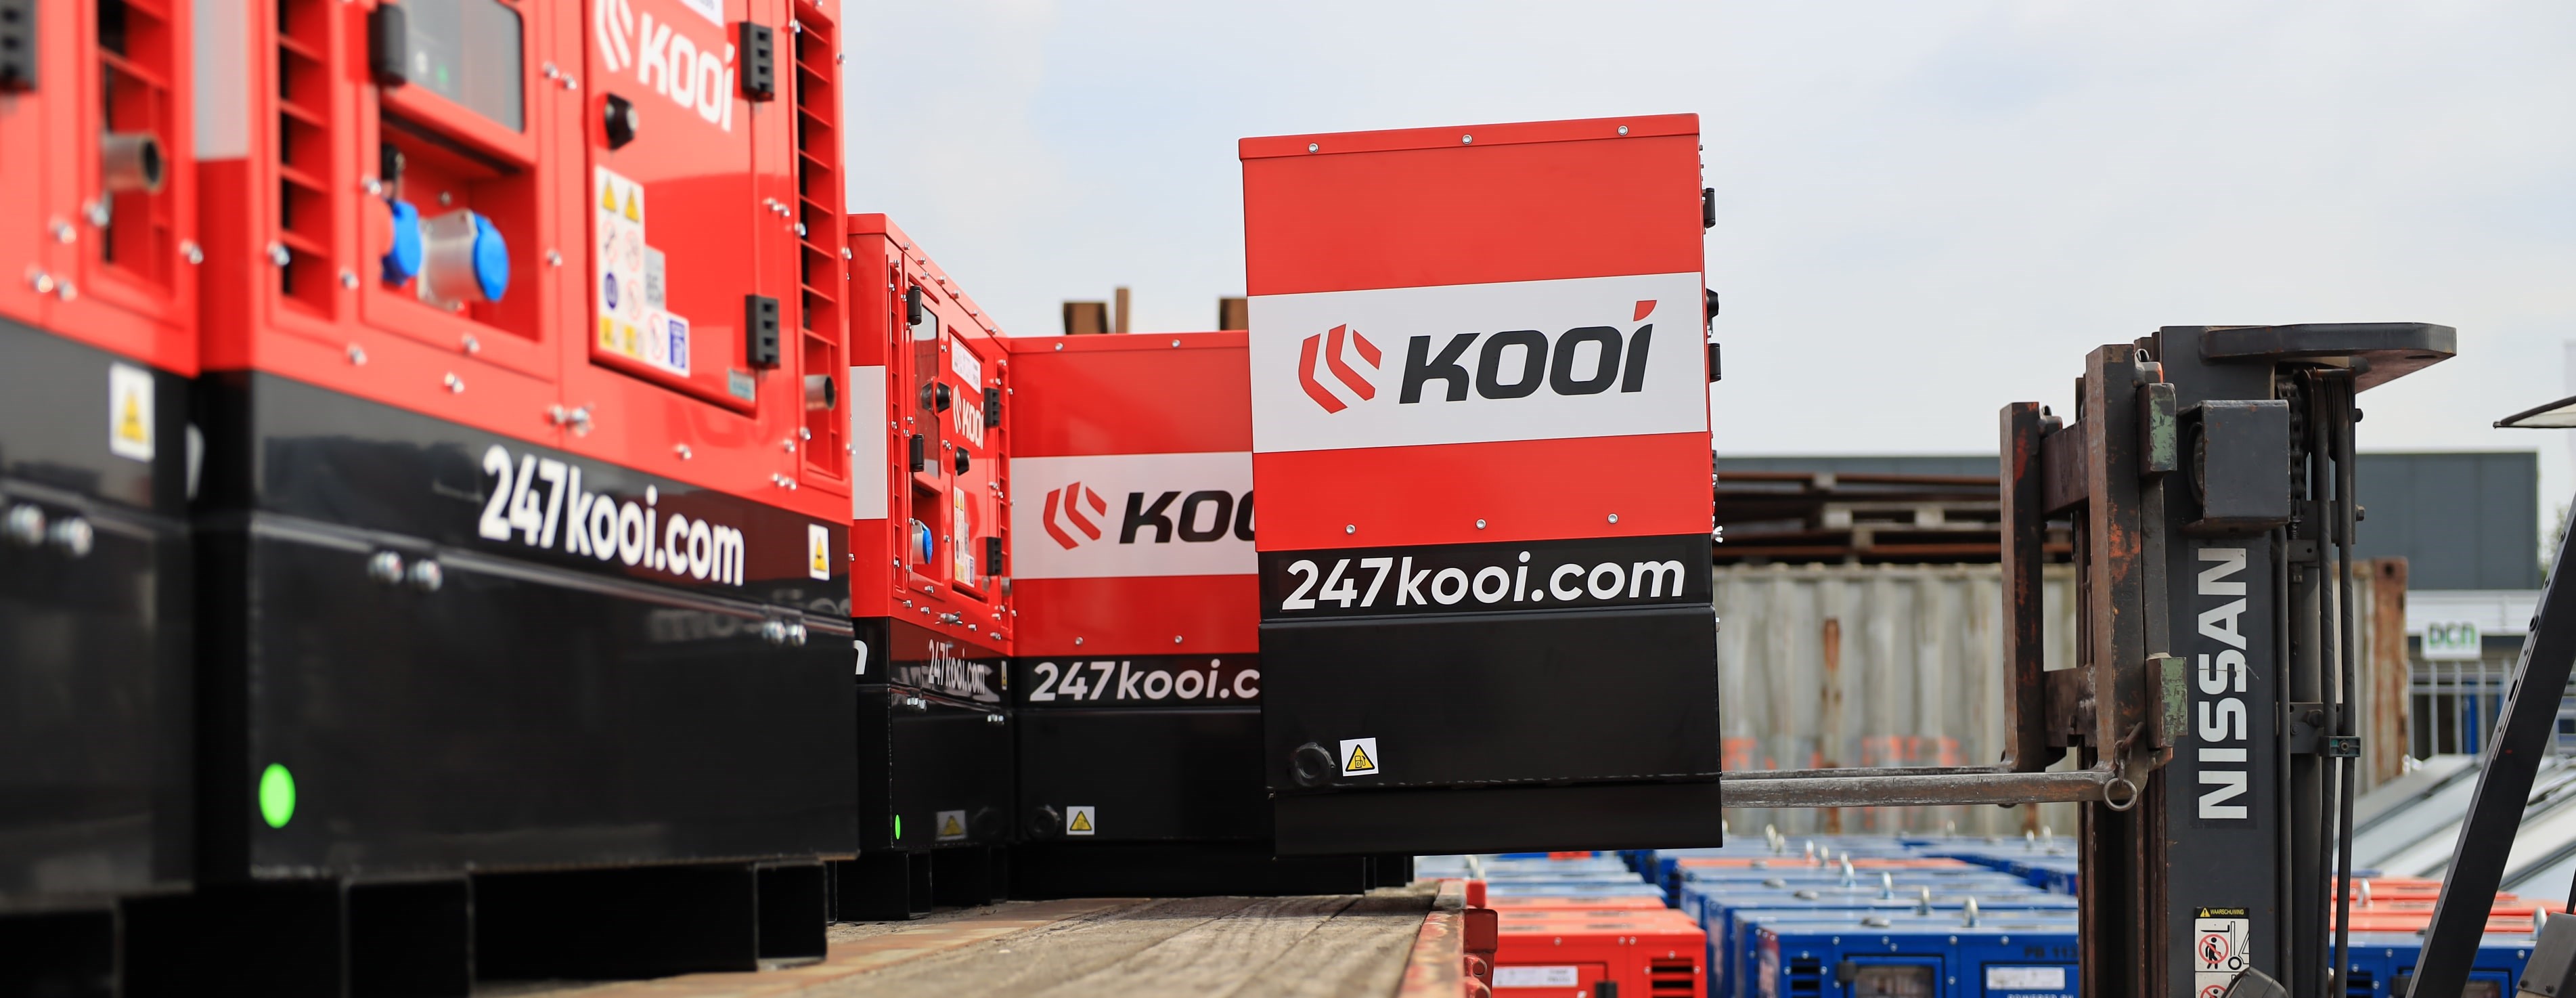 Verladung Der Mobilen Powerbox Von Kooi Durch Einen Gabelstapler